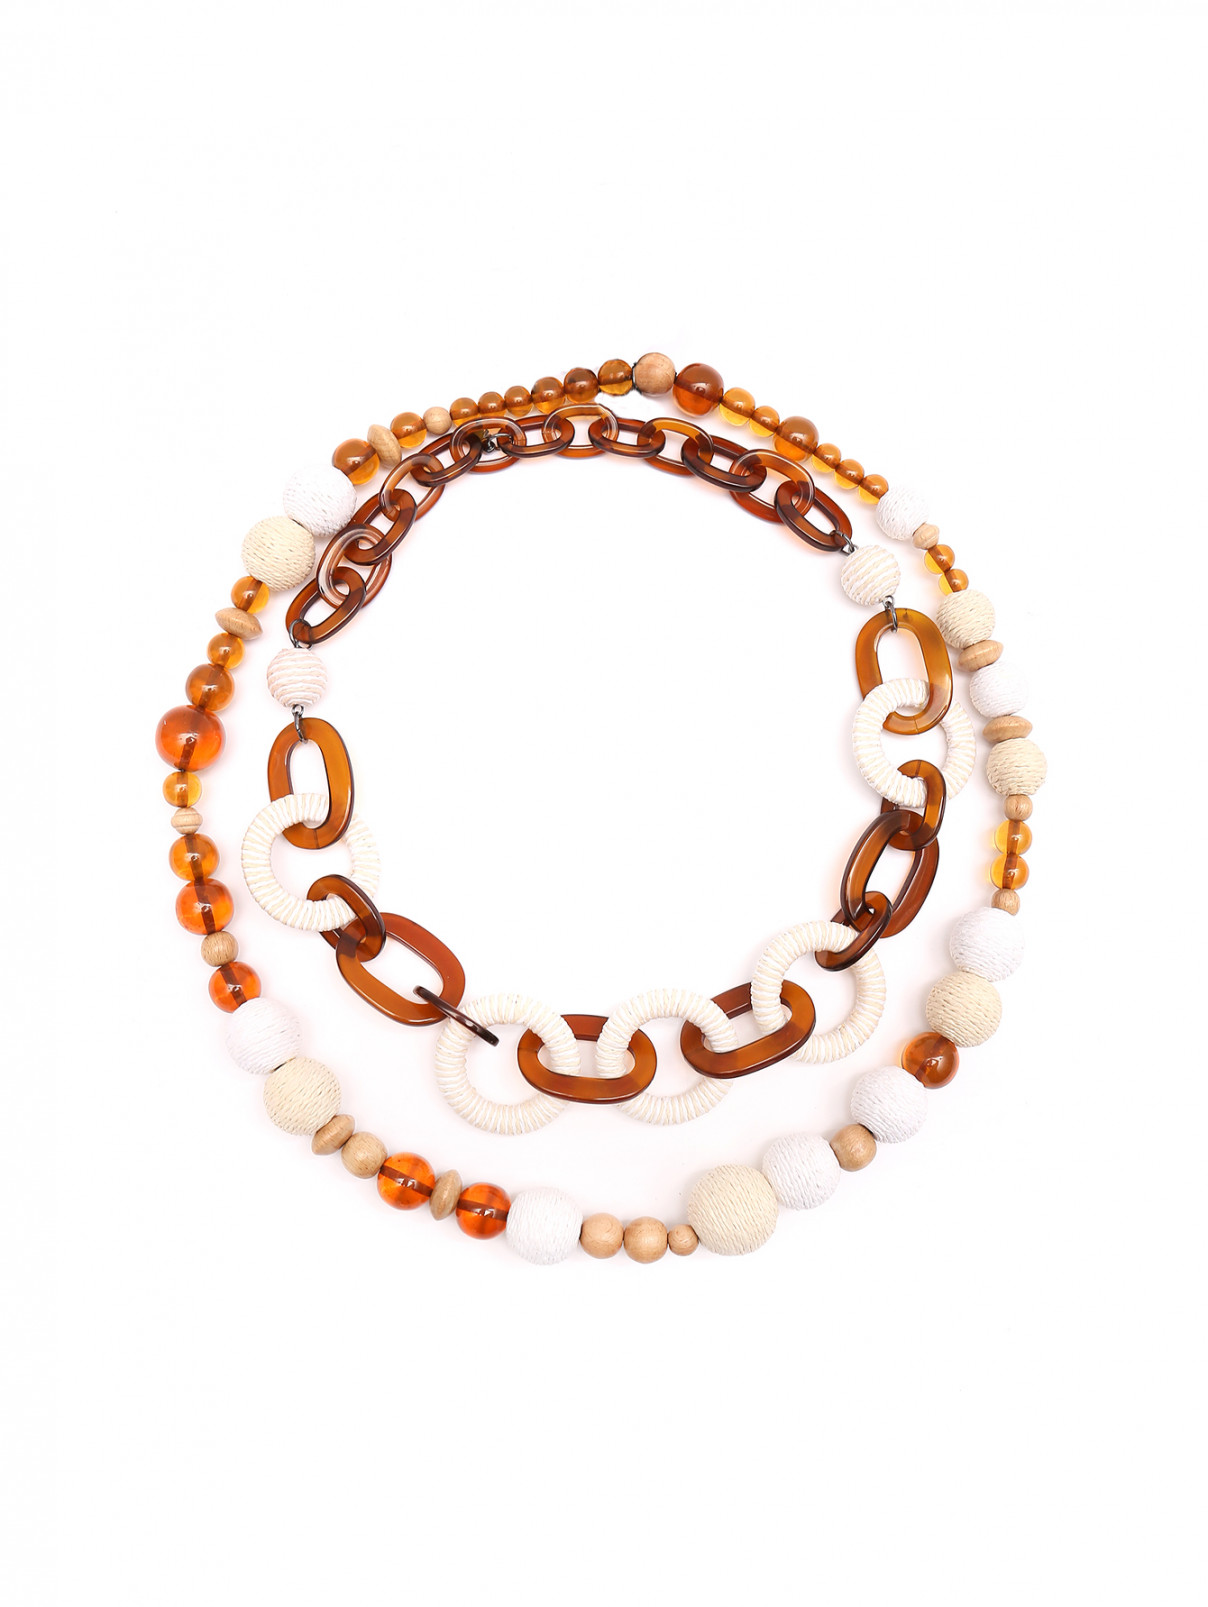 Комбинированное ожерелье из пластика и текстиля Weekend Max Mara  –  Общий вид  – Цвет:  Коричневый